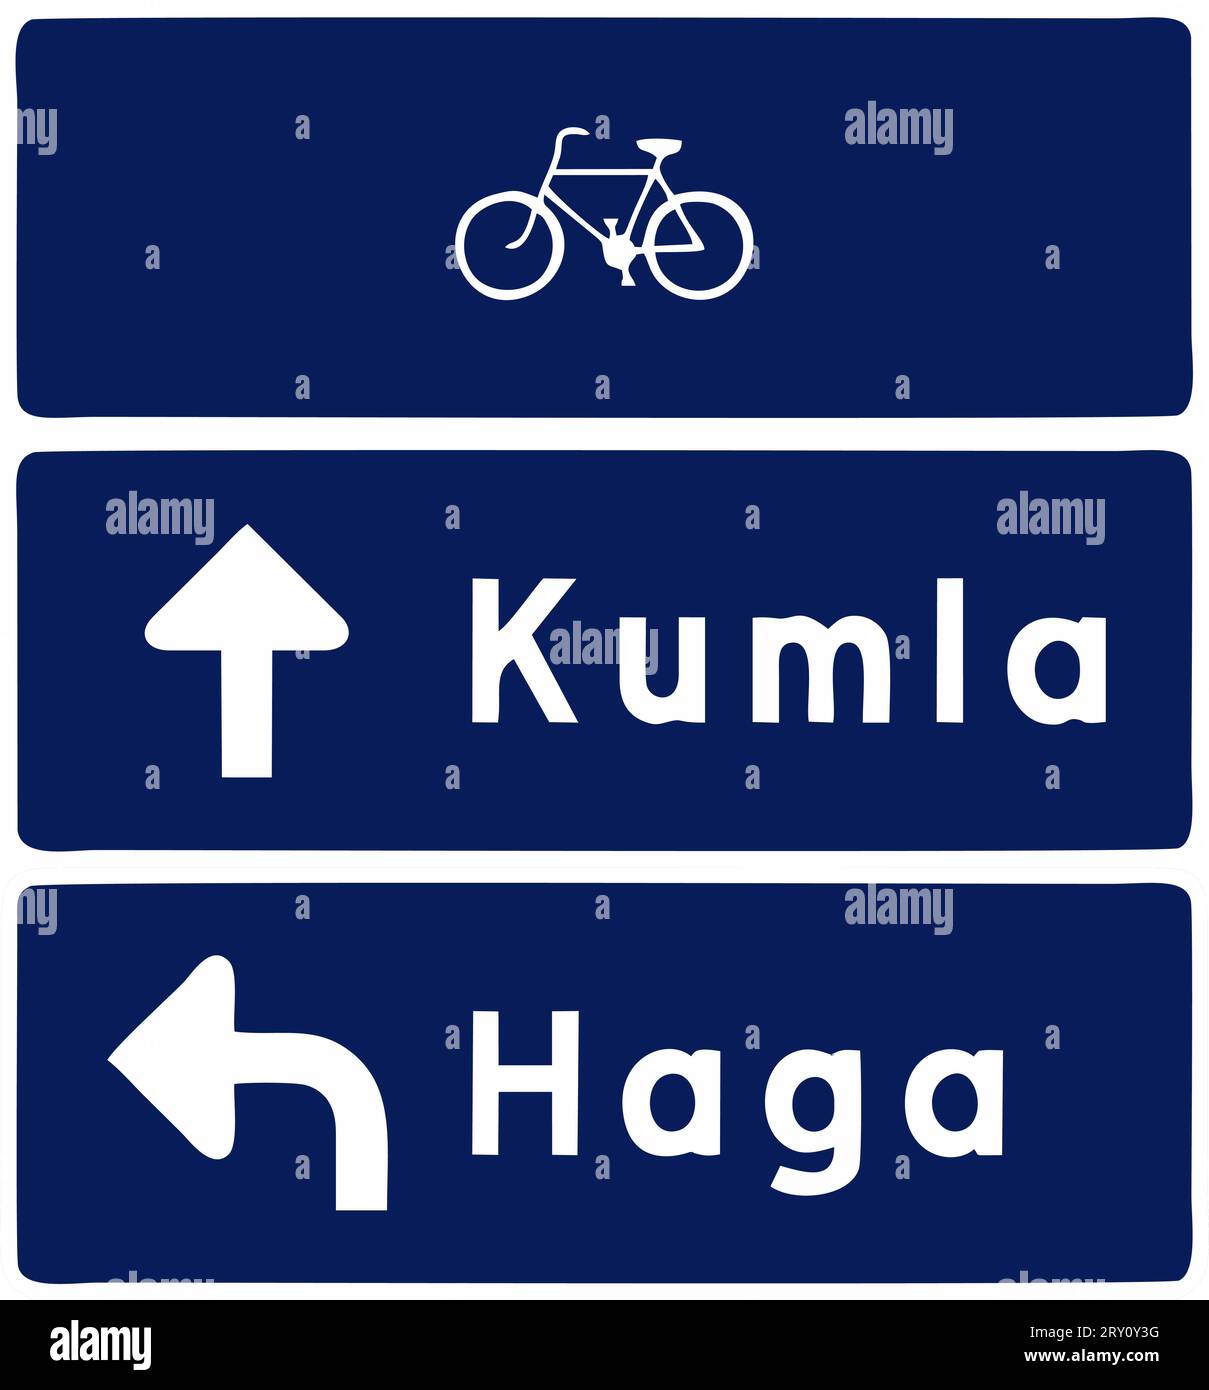 Conception de type de pile, panneaux donnant des informations, réglementation spéciale, panneaux routiers en Suède Illustration de Vecteur